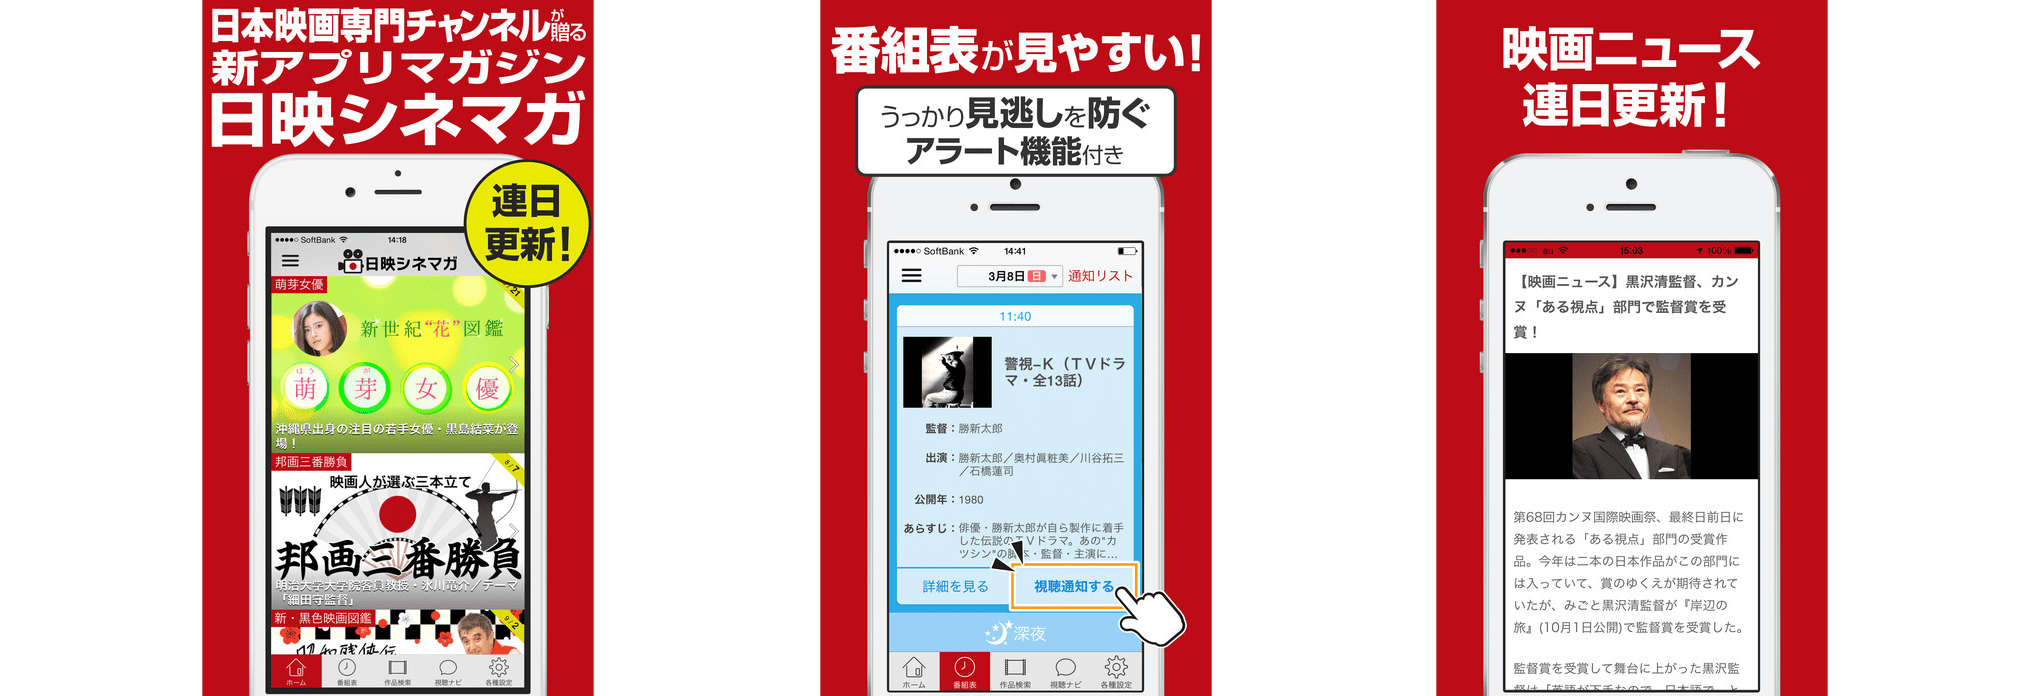 日本映画放送株式会社のニュースアプリ開発